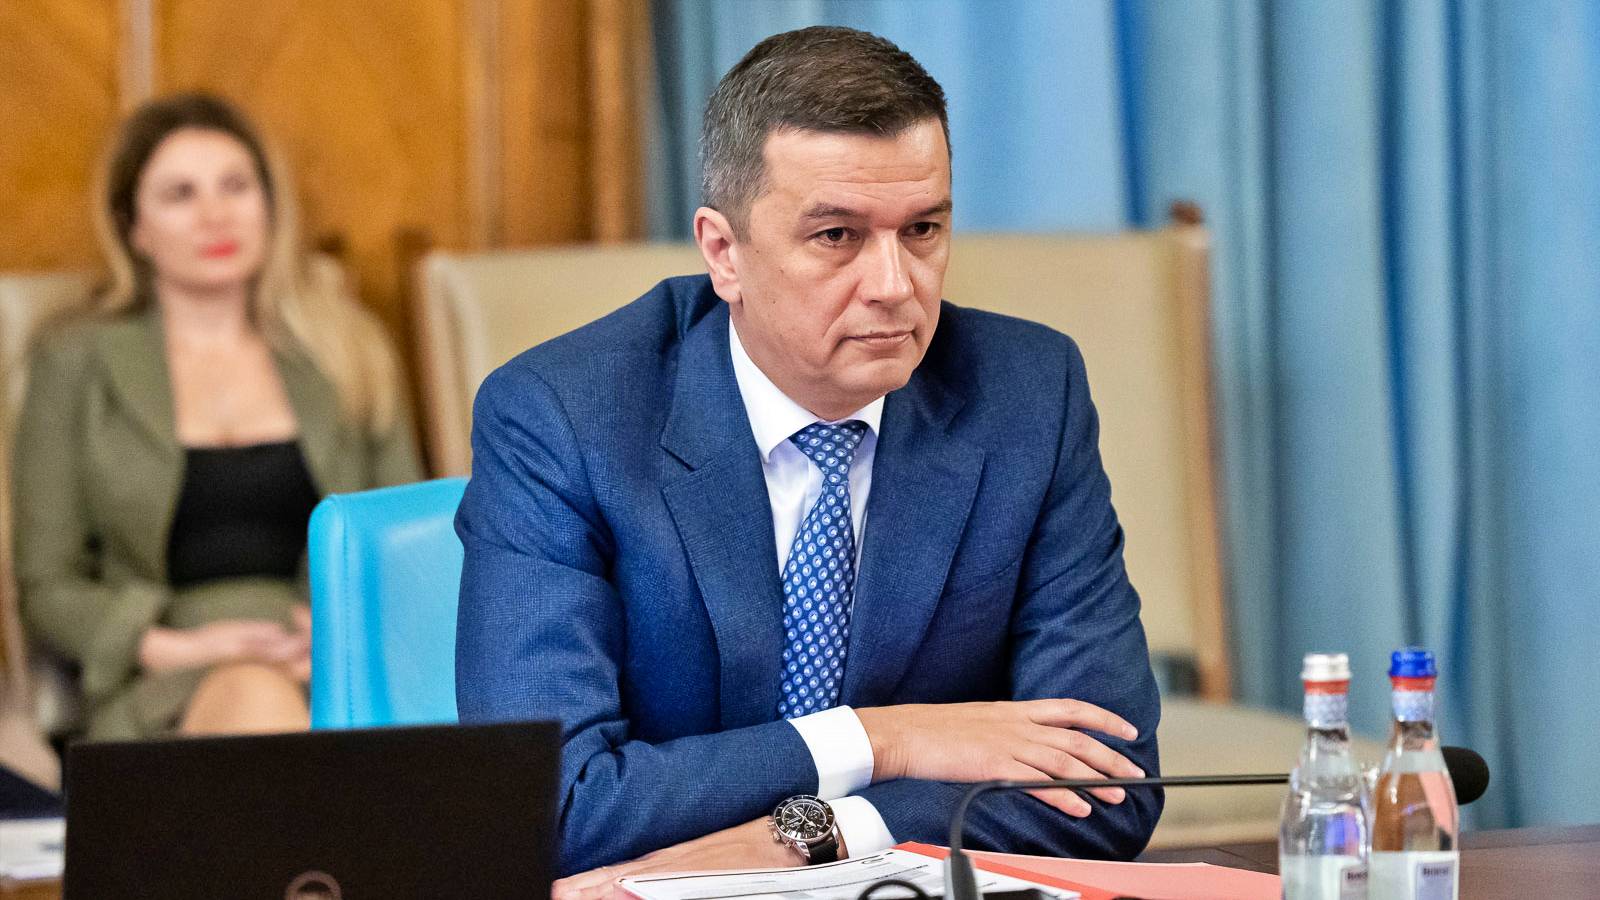 Sorin Grindeanu 2 Annunci IMPORTANTI Ministro PSD della Romania